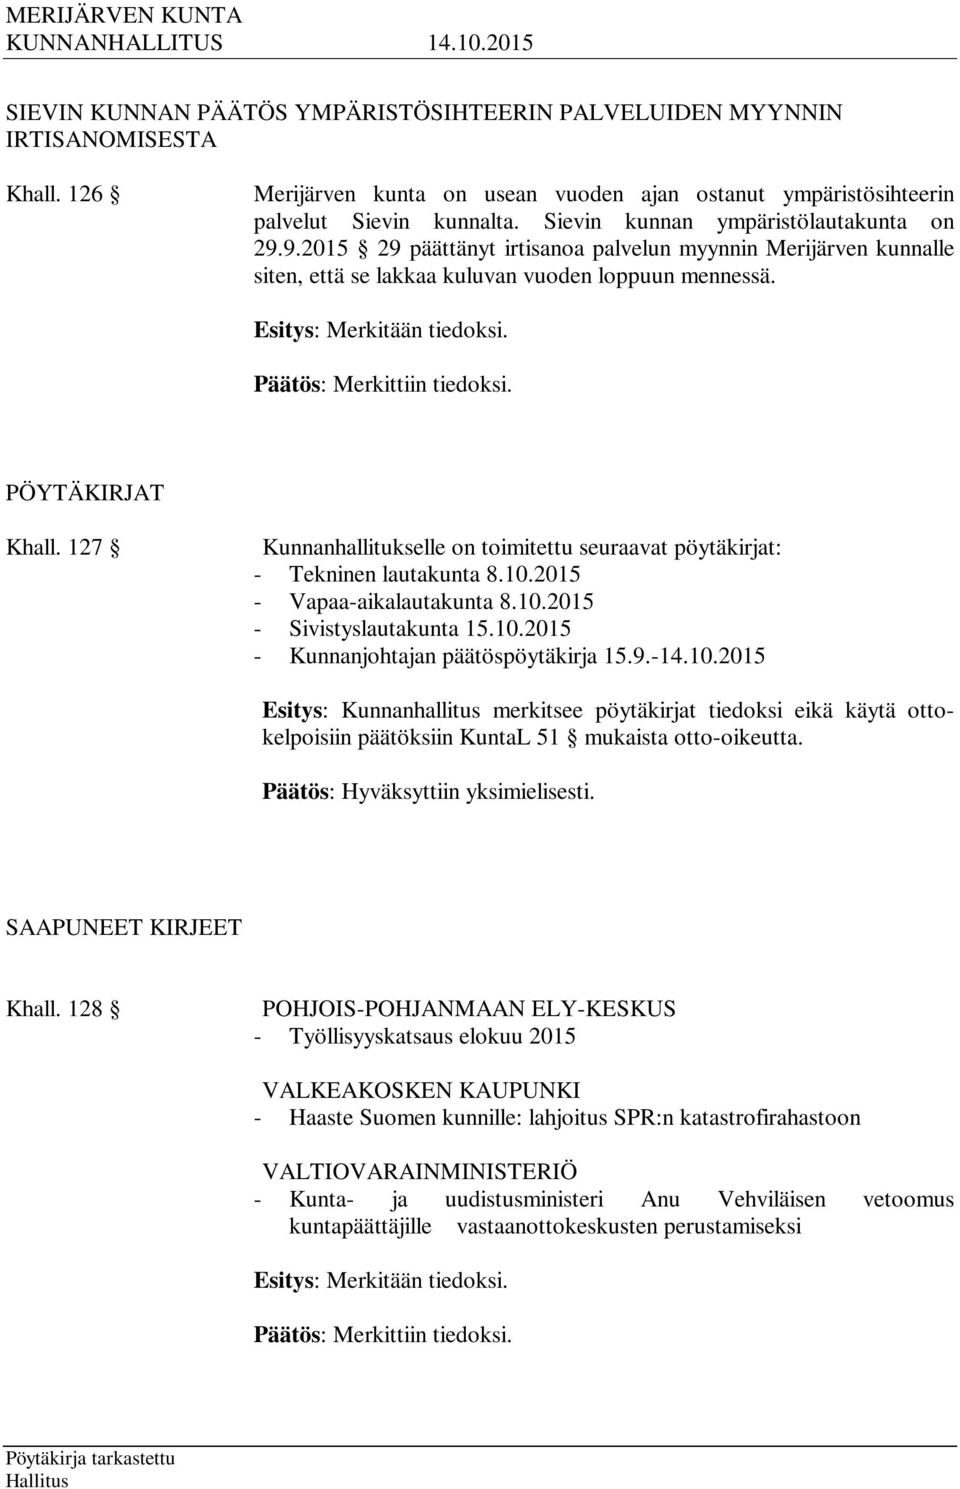 Päätös: Merkittiin tiedoksi. PÖYTÄKIRJAT Khall. 127 Kunnanhallitukselle on toimitettu seuraavat pöytäkirjat: - Tekninen lautakunta 8.10.2015 - Vapaa-aikalautakunta 8.10.2015 - Sivistyslautakunta 15.